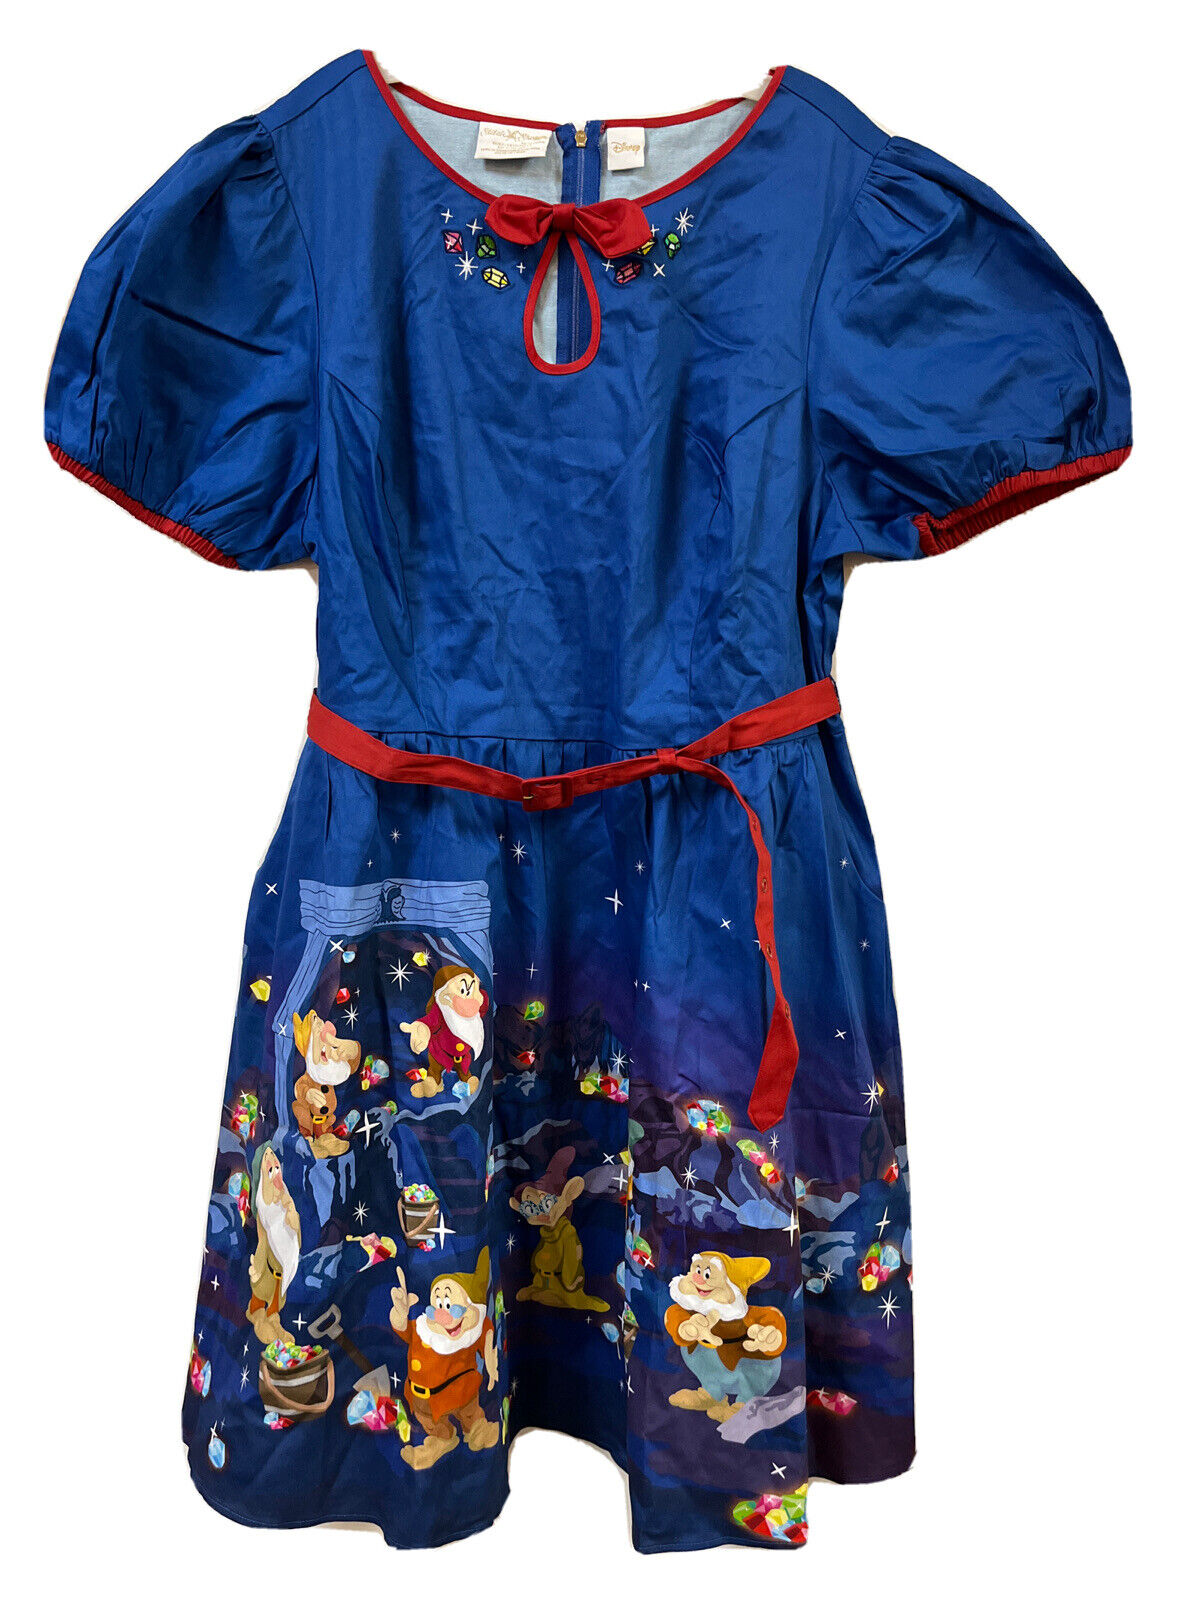 New Disney SNOW WHITE Lauren Dress Sz 2X Loungefly Stitch Shoppe 7 Dwarves